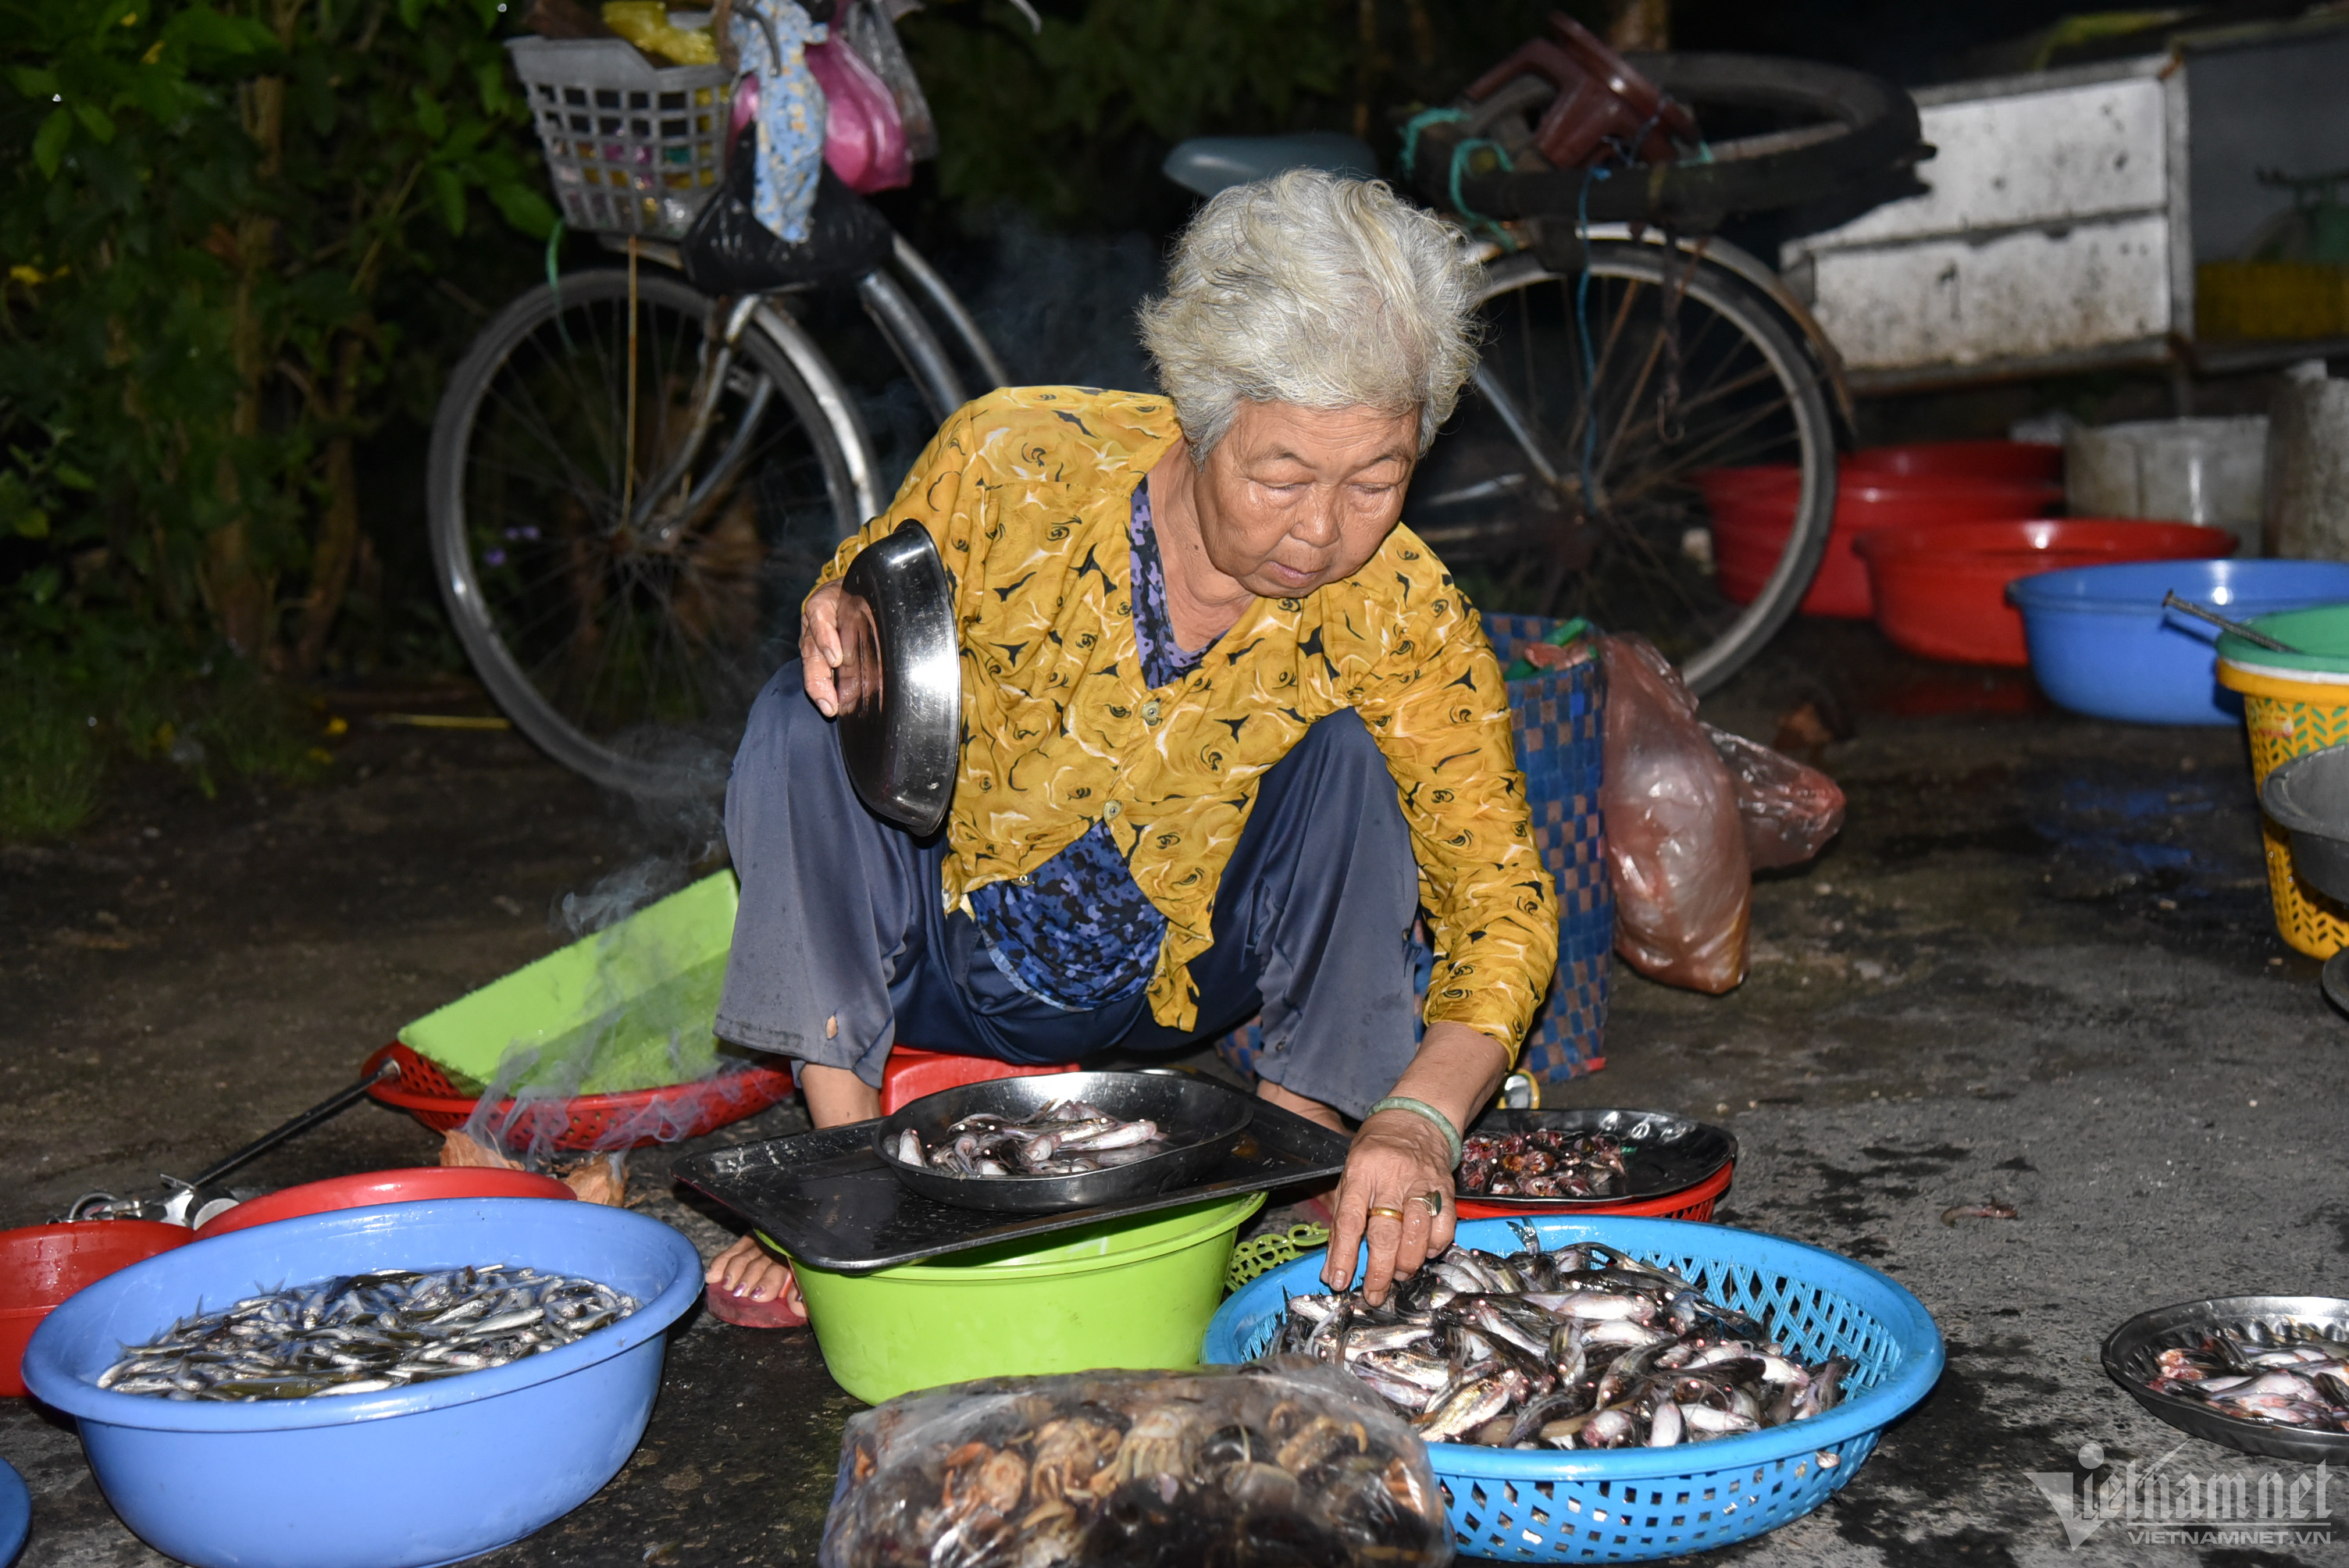 Mùa nước nổi về An Giang đi chợ 'ma' lúc nửa đêm (+video) W-cho-ma-13-951